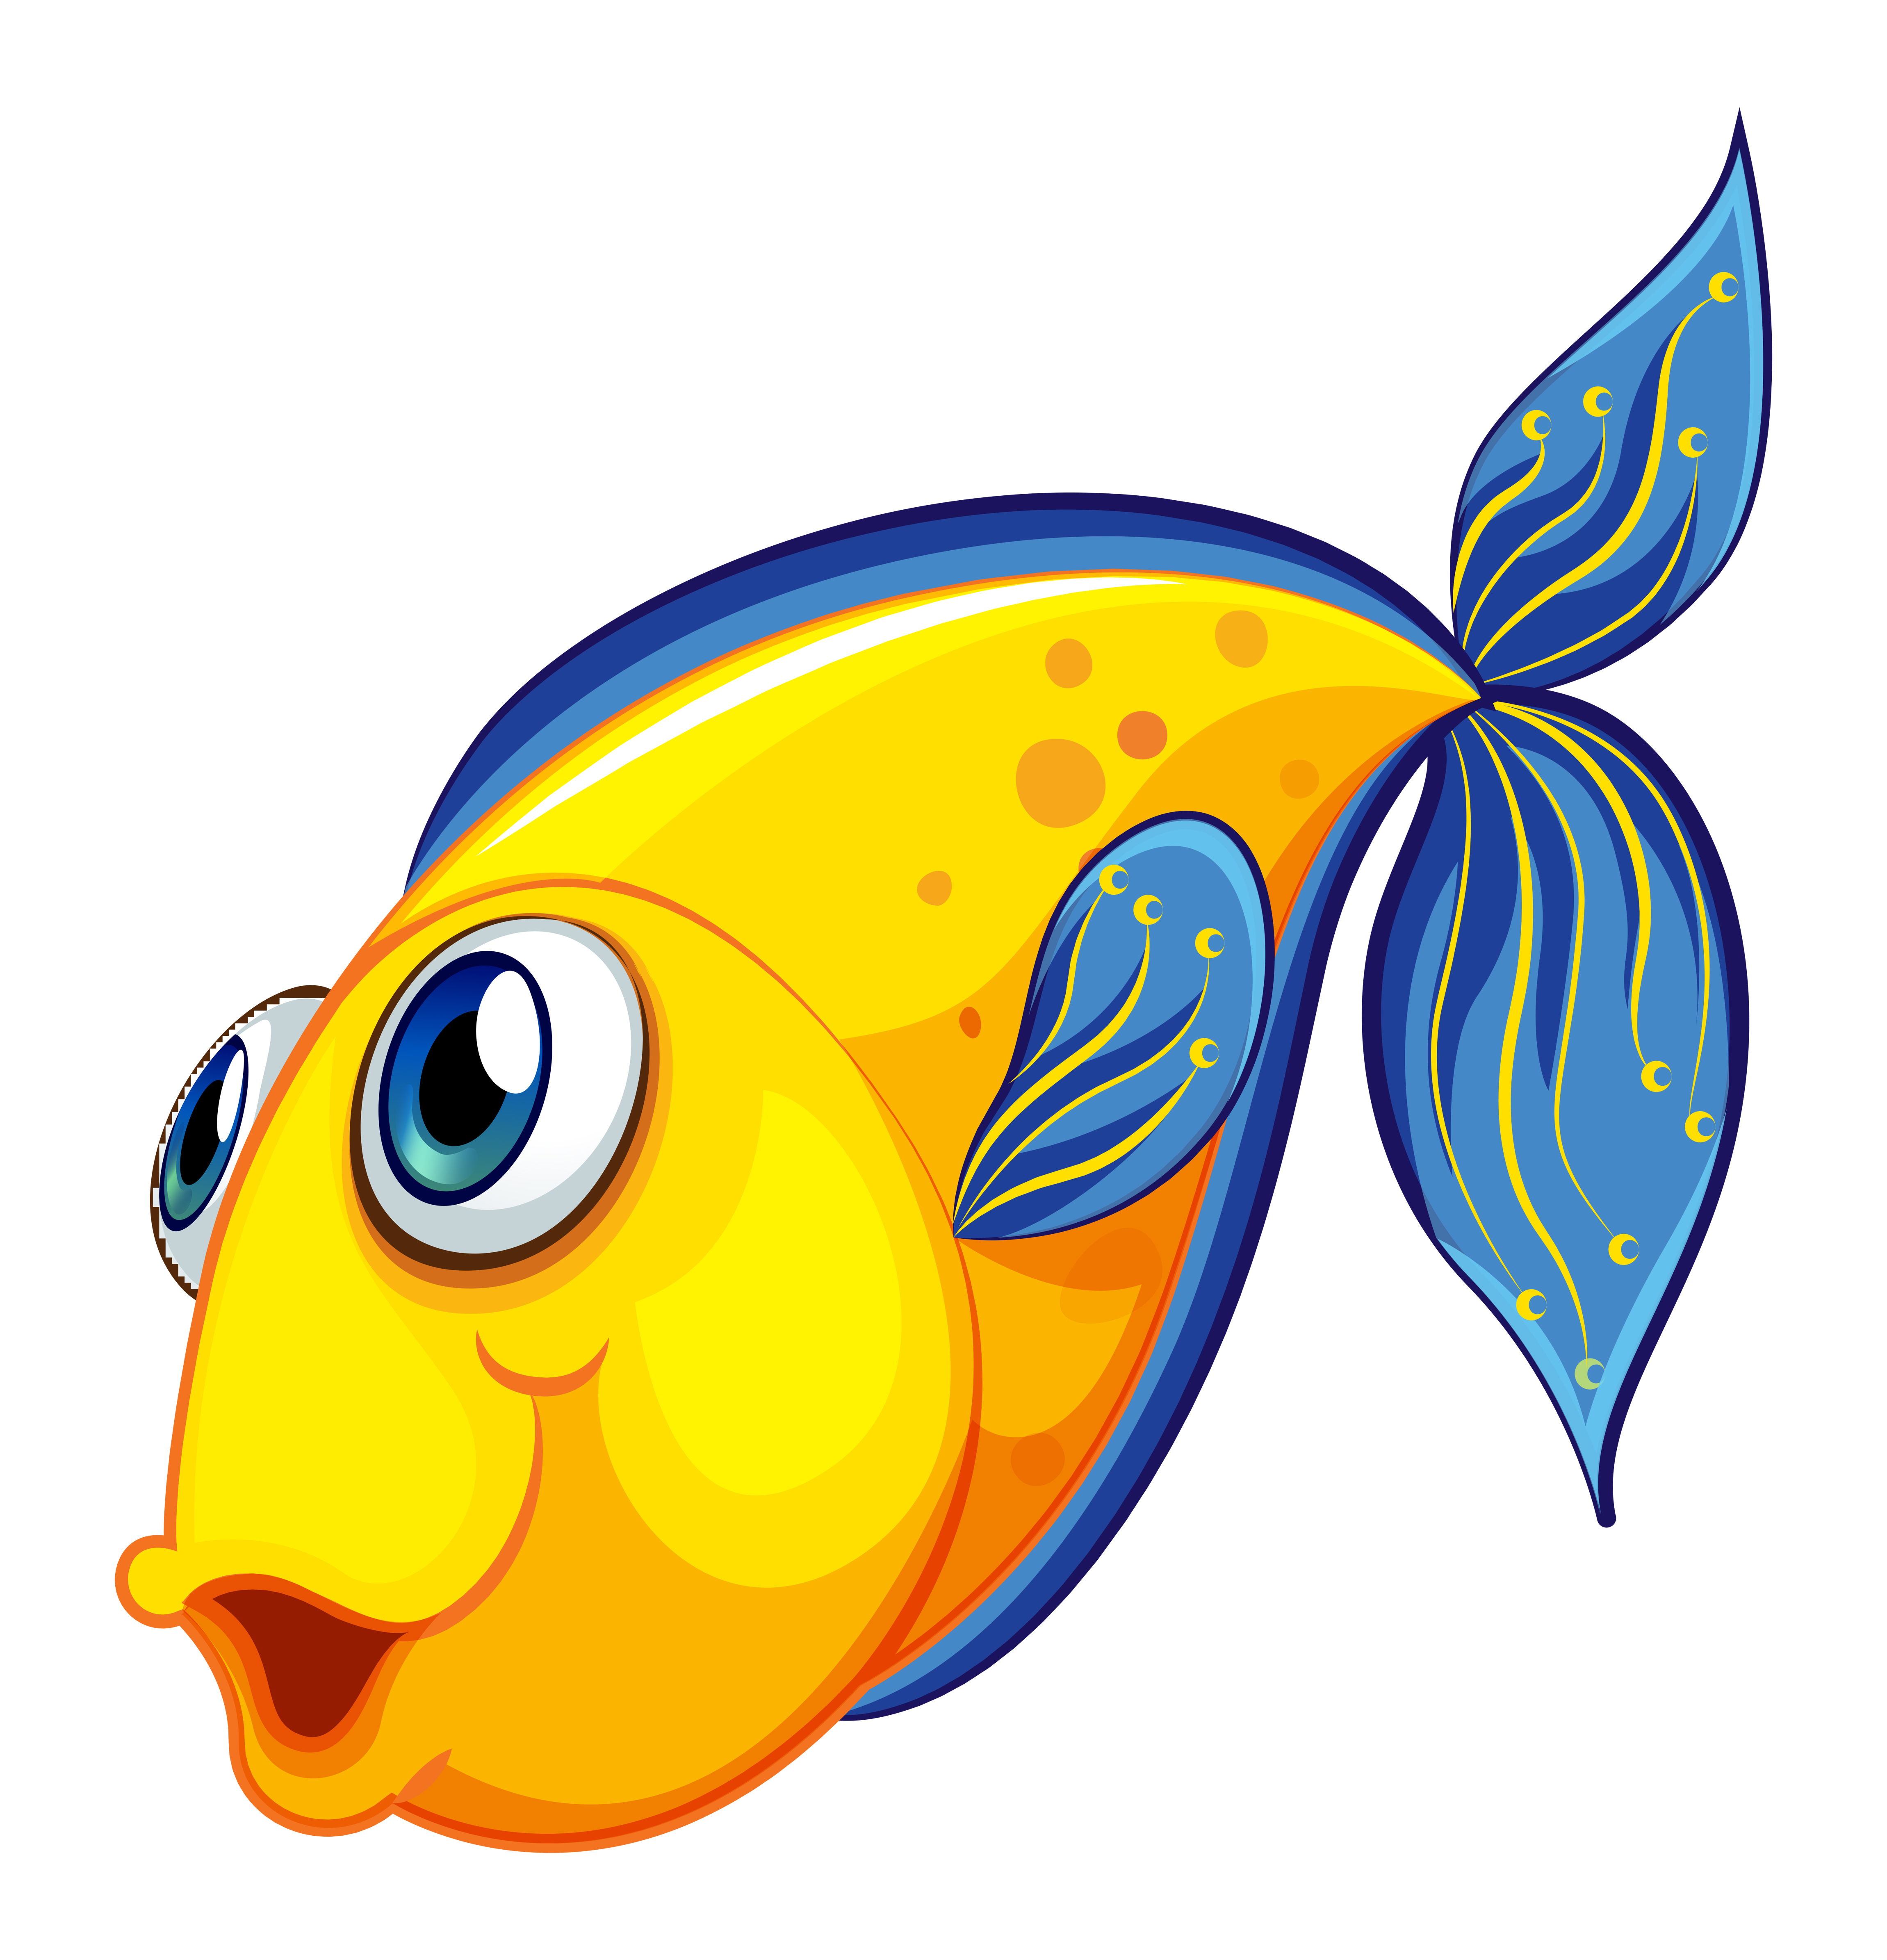 Download A yellow fish 522838 - Download Free Vectors, Clipart Graphics & Vector Art